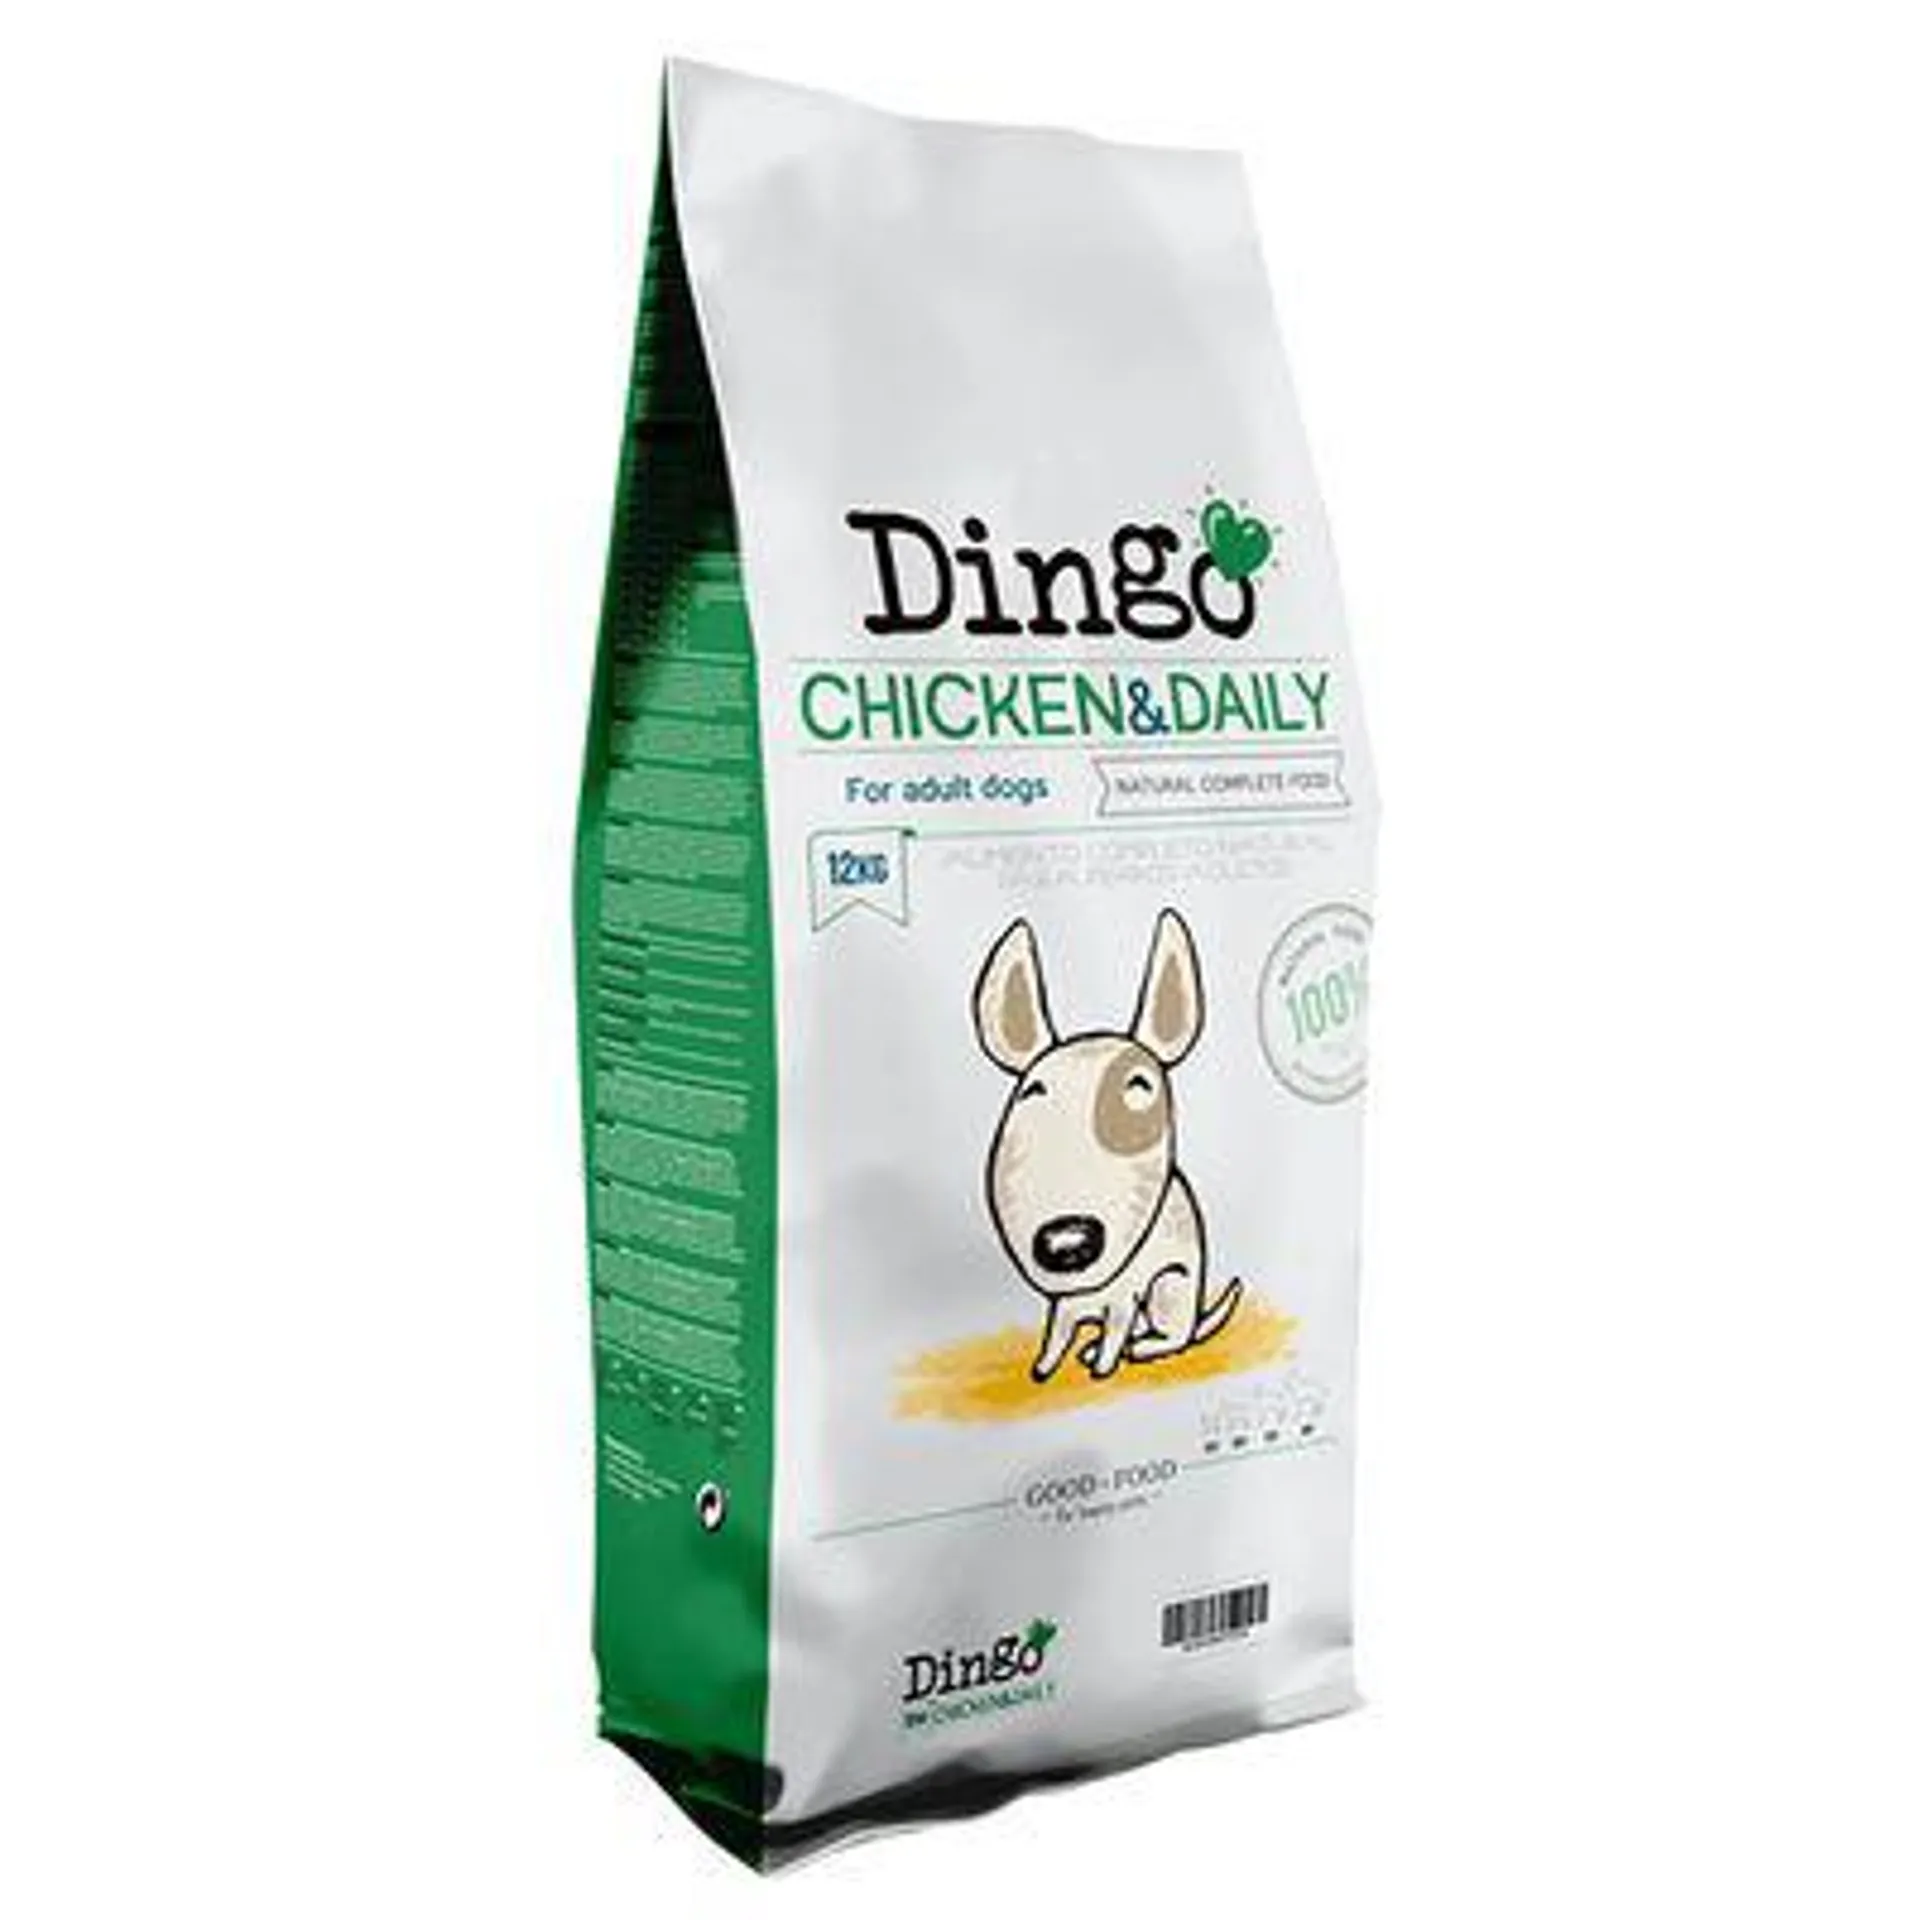 Croquettes Dingo Chicken & Daily 2 x 12 kg pour chien : 20 % de remise !